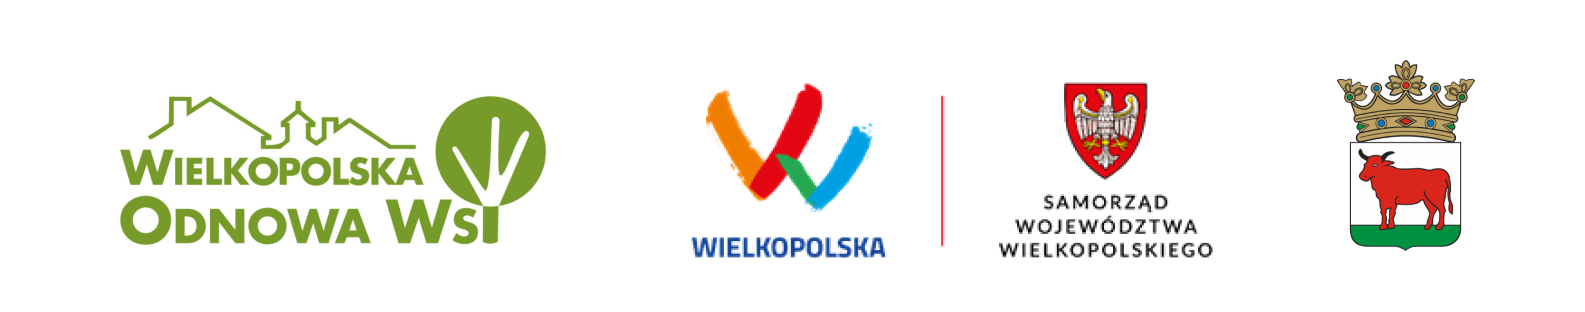 Logo - WIelkopolska Odnowa Wsi, Wielkopolska, Samorząd Województwa Wielkopolskiego, Herb Trzcianki